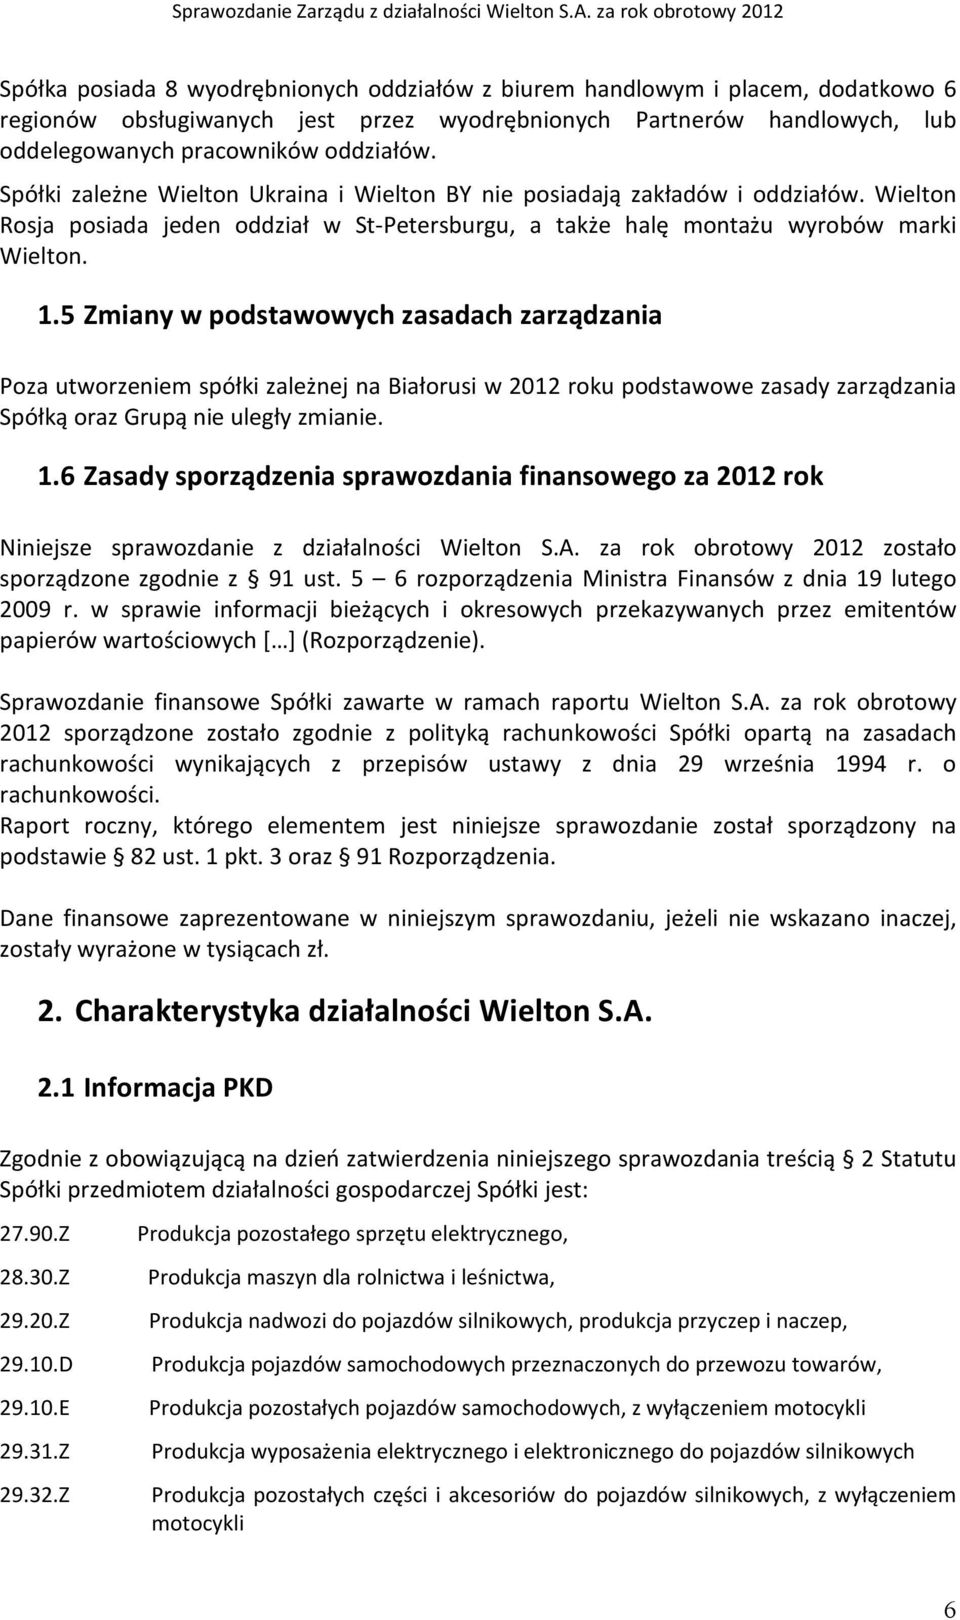 5 Zmiany w podstawowych zasadach zarządzania Poza utworzeniem spółki zależnej na Białorusi w 2012 roku podstawowe zasady zarządzania Spółką oraz Grupą nie uległy zmianie. 1.